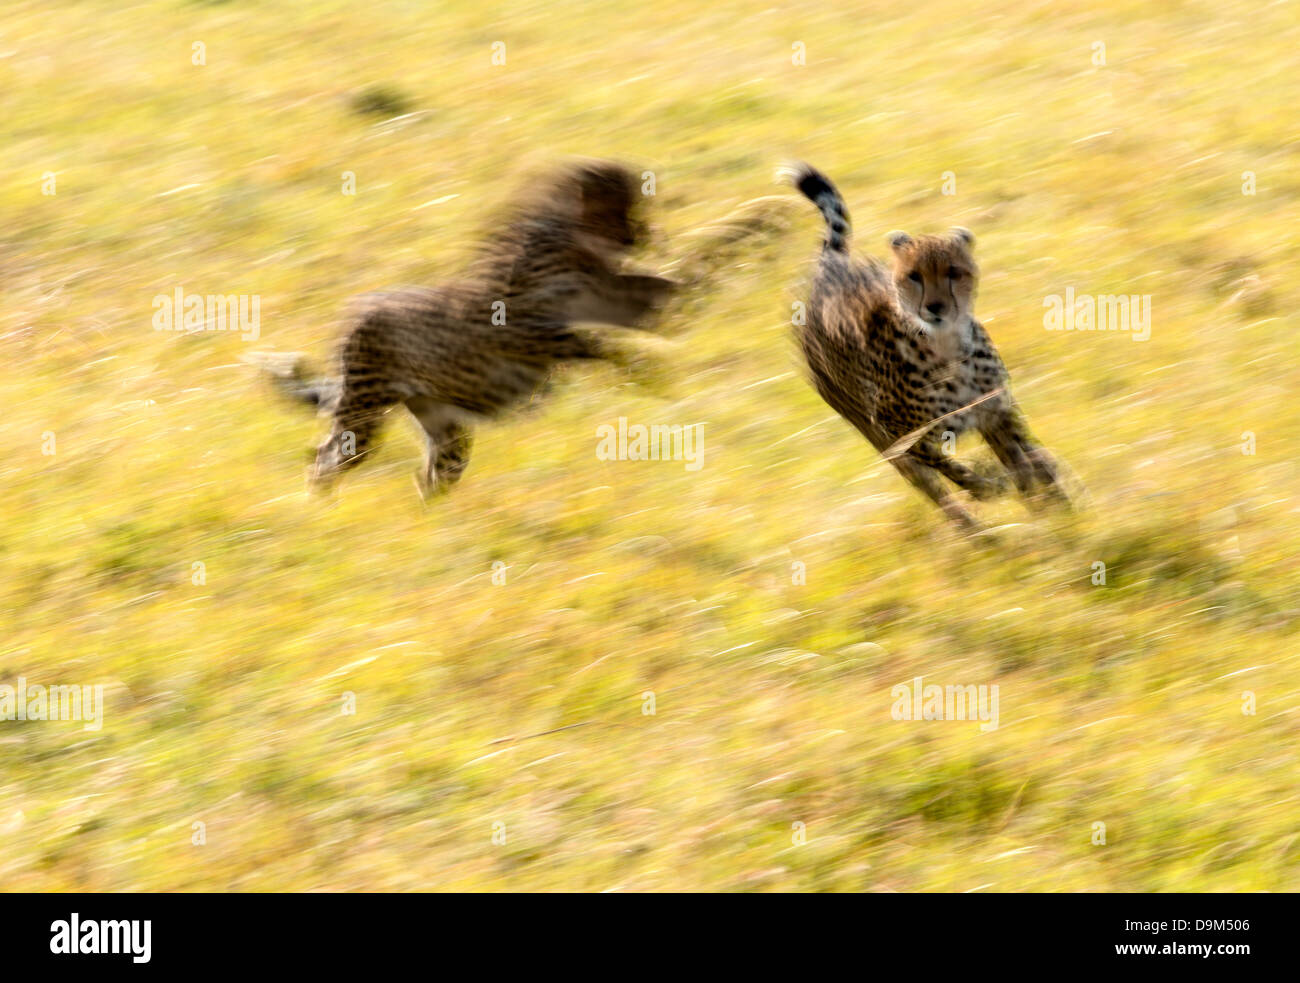 Deux oursons jouant Guépard (Acinonyx jubatus) Kicheche Afrique safari Masai Mara Banque D'Images